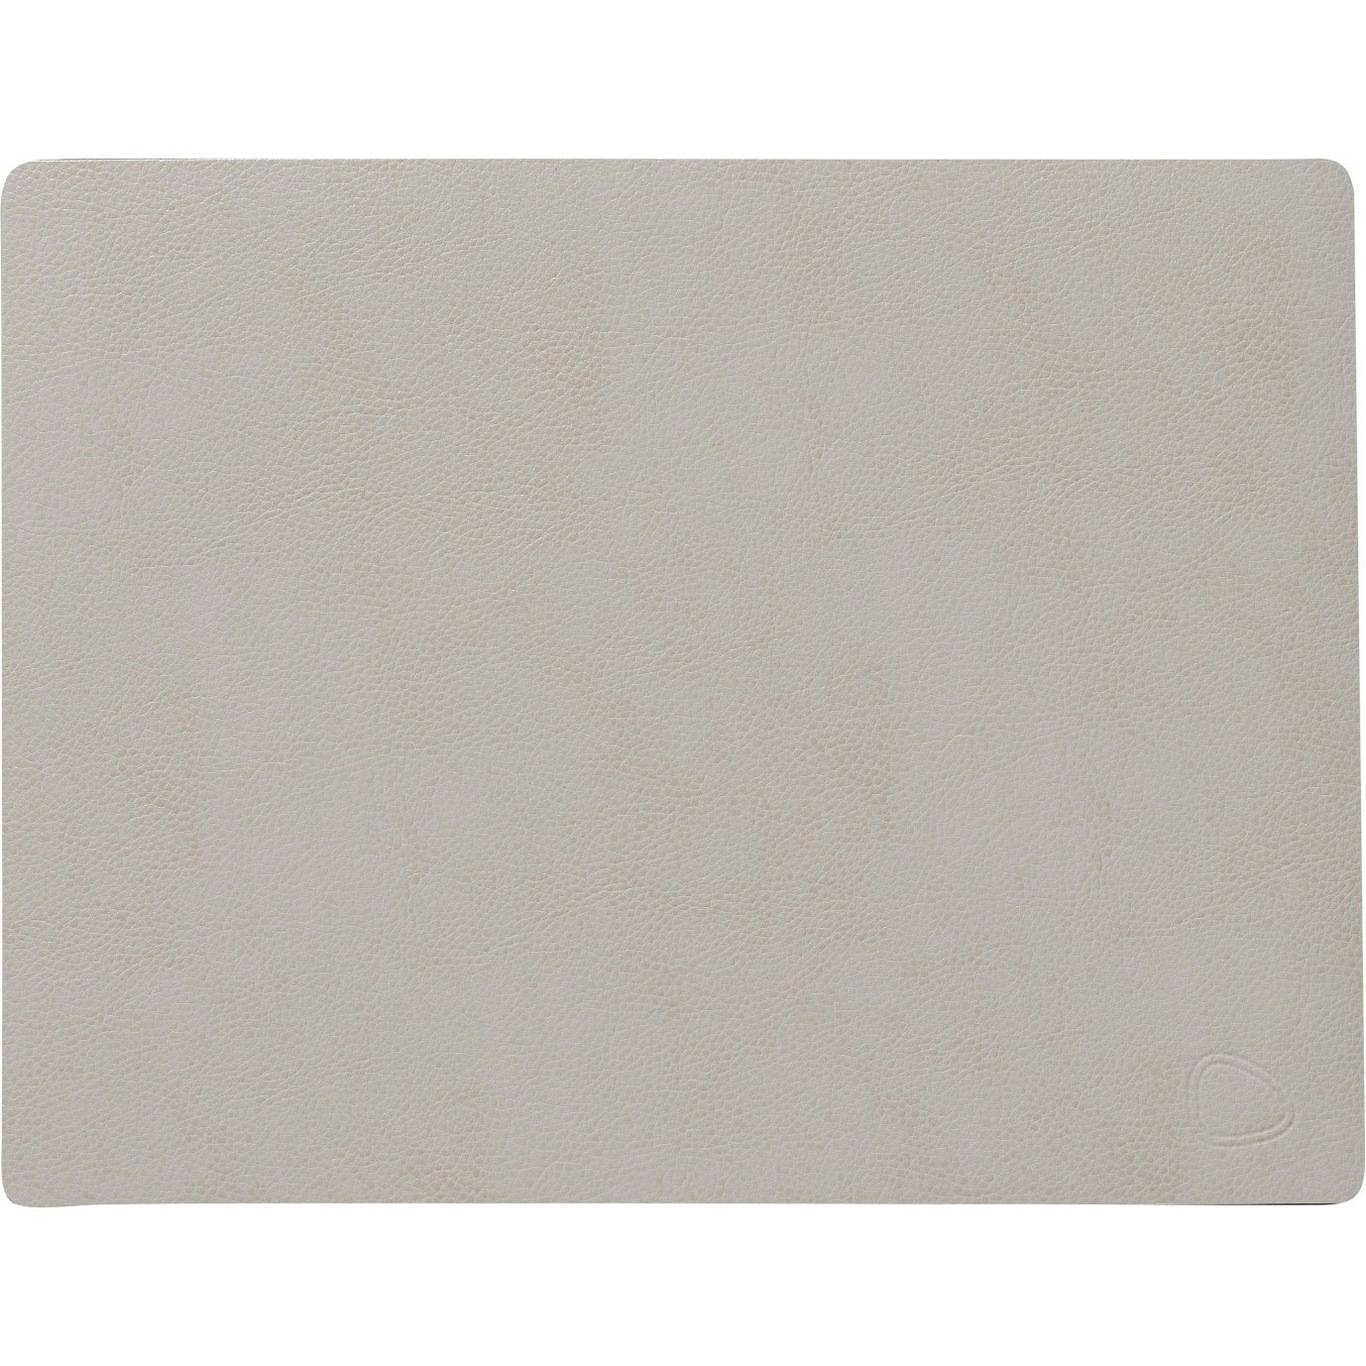 Square Tischset Serene 26,5x34,5 cm, Cream